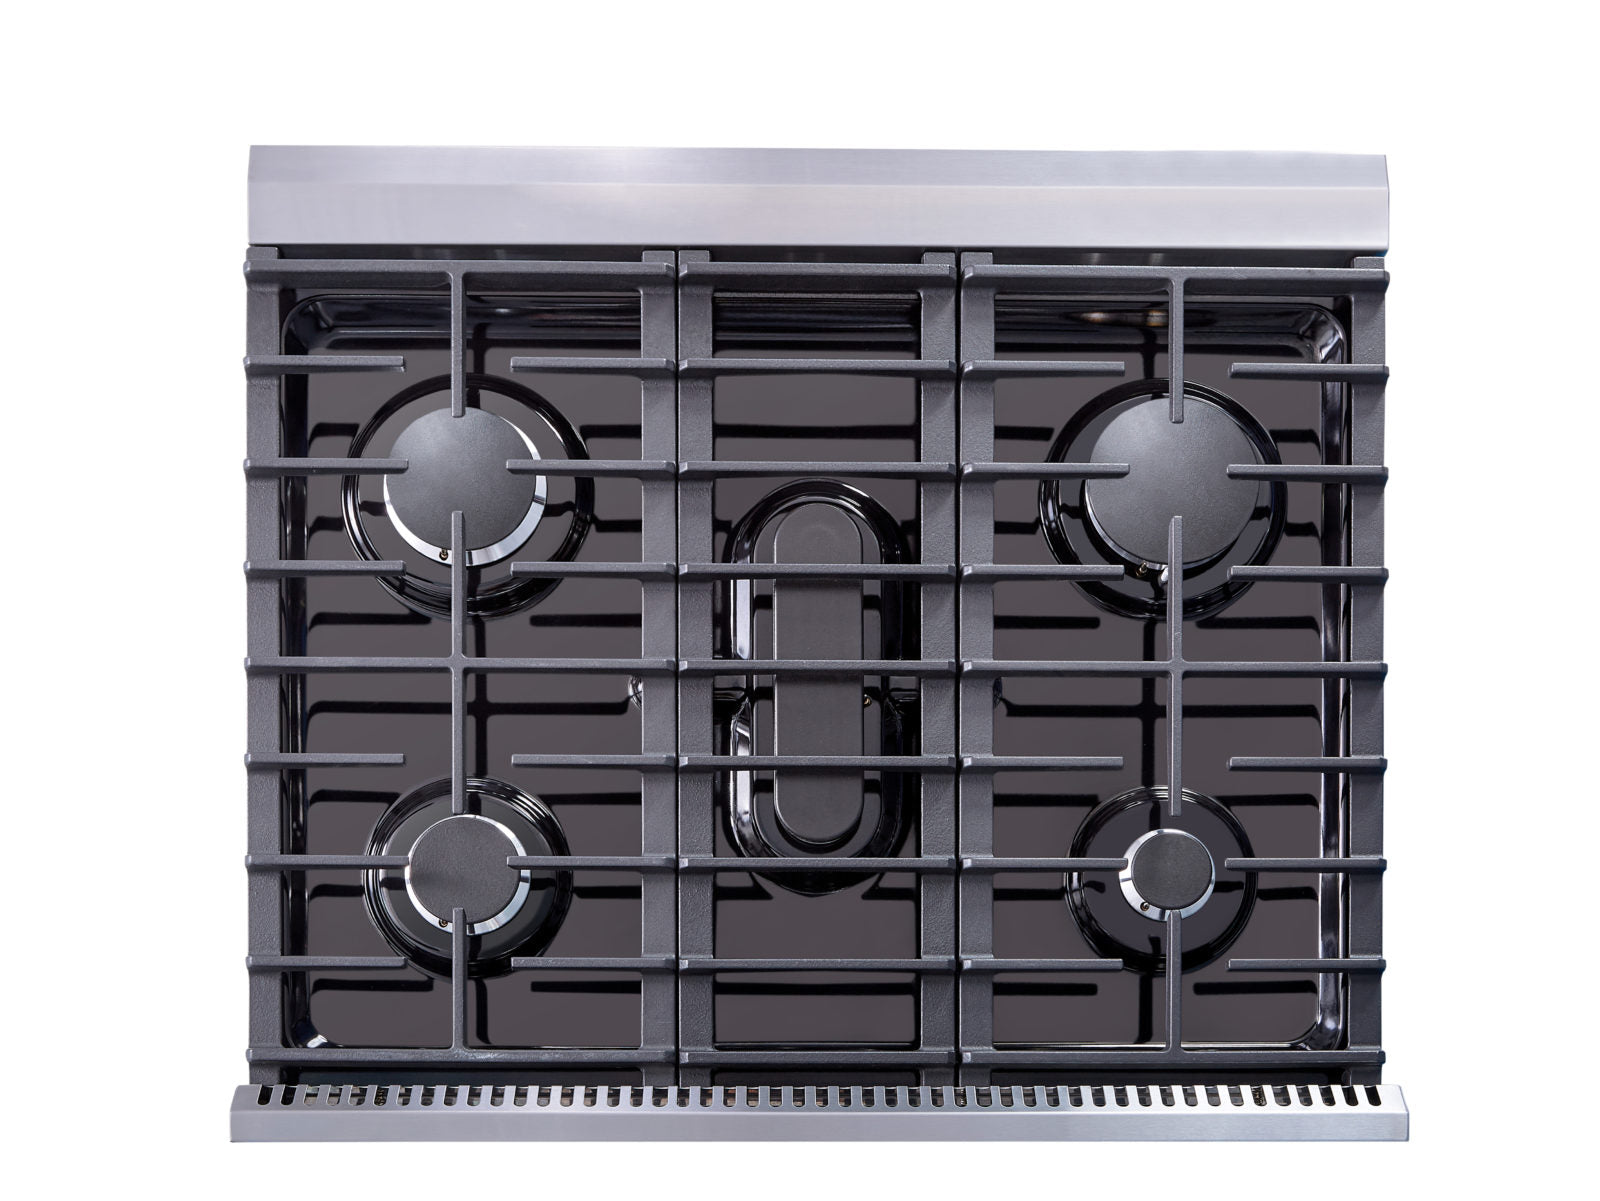 Appliance Package, 4 Piece, 36" Fridge, 30" Gas Range, Range Hood & Dishwasher) Stainless Steel Kitchen Set,  BRTK 30-4 - RenoShop